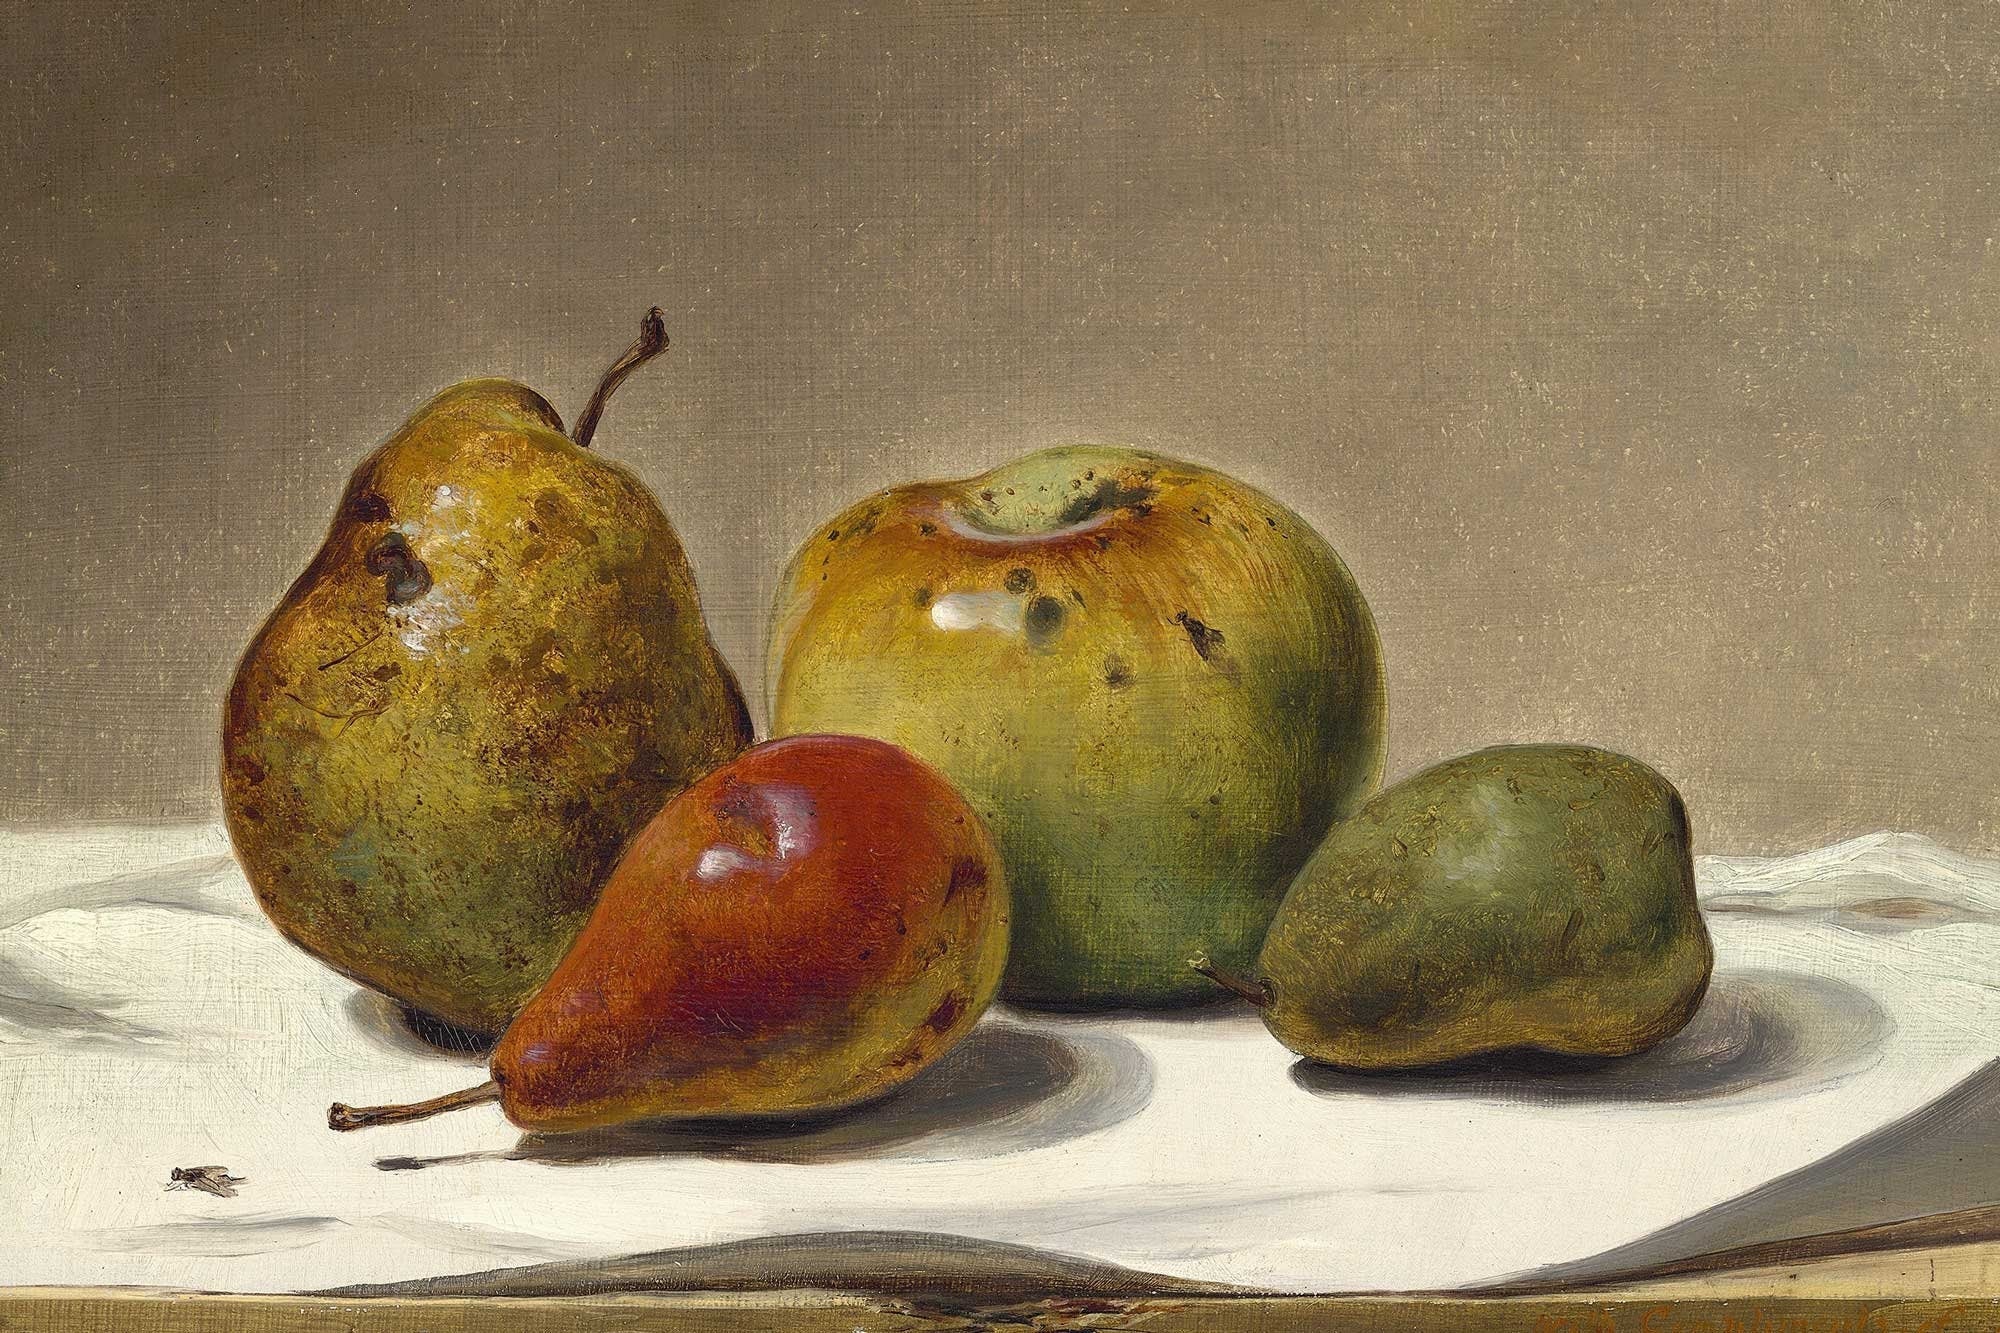 Apple and Pear Vintage Print - Hartsholme Prints